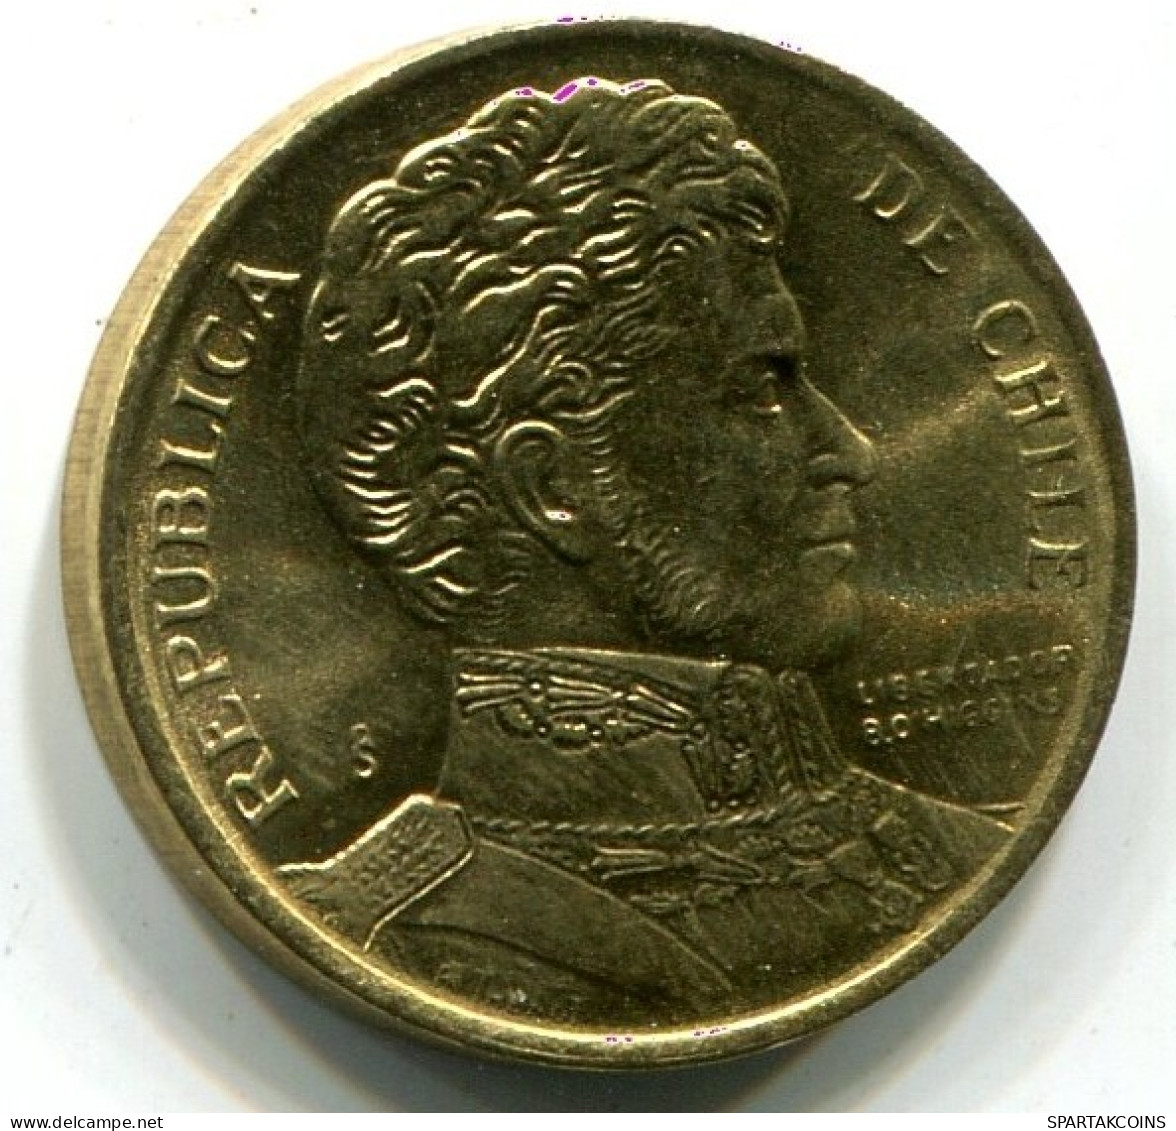 1 PESO 1990 CHILE UNC Moneda #W10969.E.A - Chili